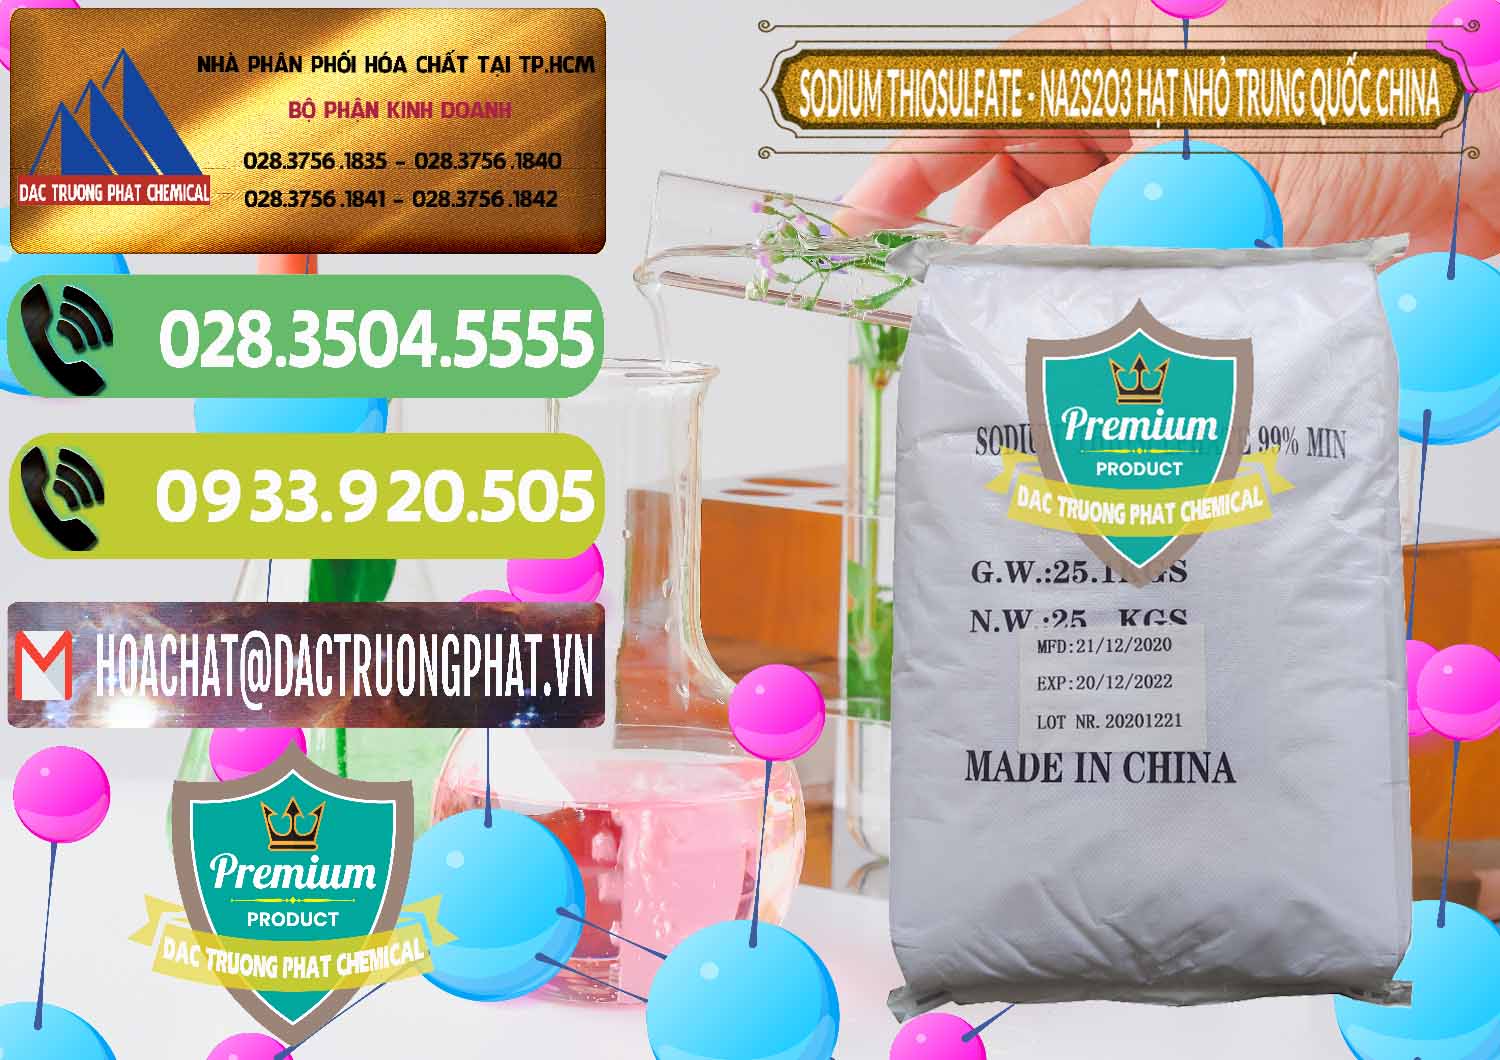 Đơn vị chuyên cung ứng và bán Sodium Thiosulfate - NA2S2O3 Hạt Nhỏ Trung Quốc China - 0204 - Công ty kinh doanh và phân phối hóa chất tại TP.HCM - hoachatmientay.vn